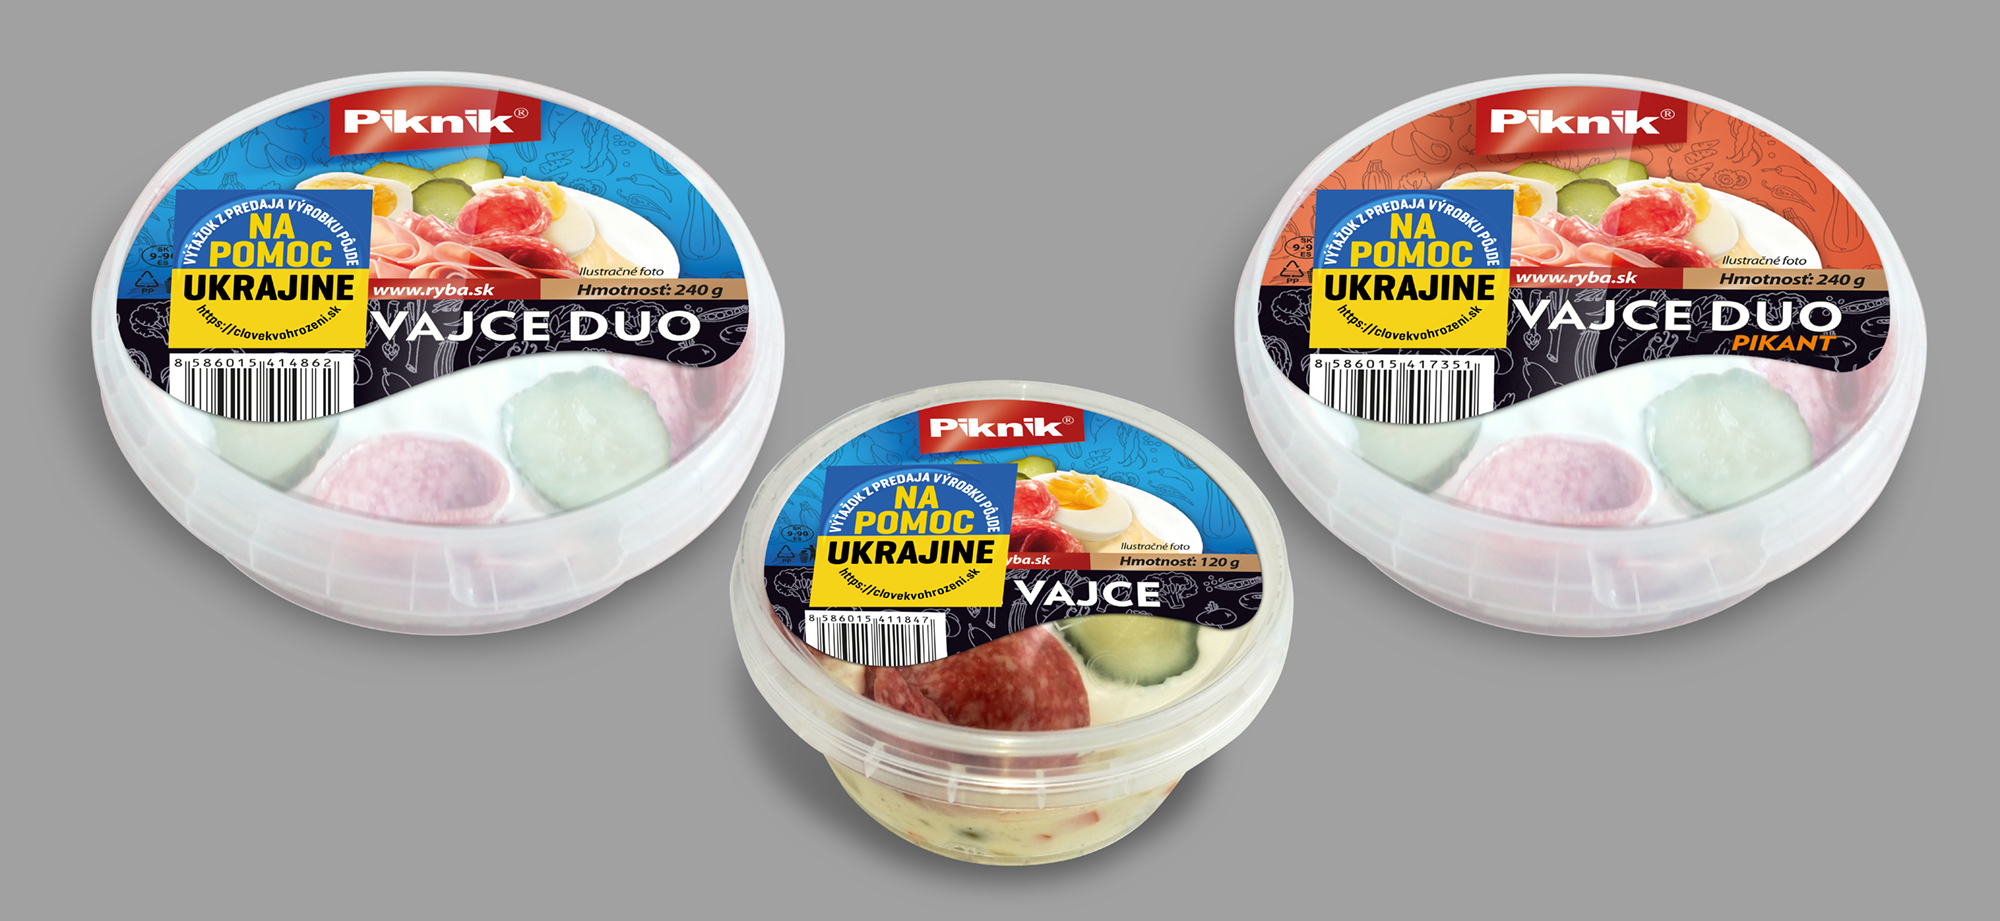 Spoločnosť RYBA Košice mení názov produktu ruské vajce.